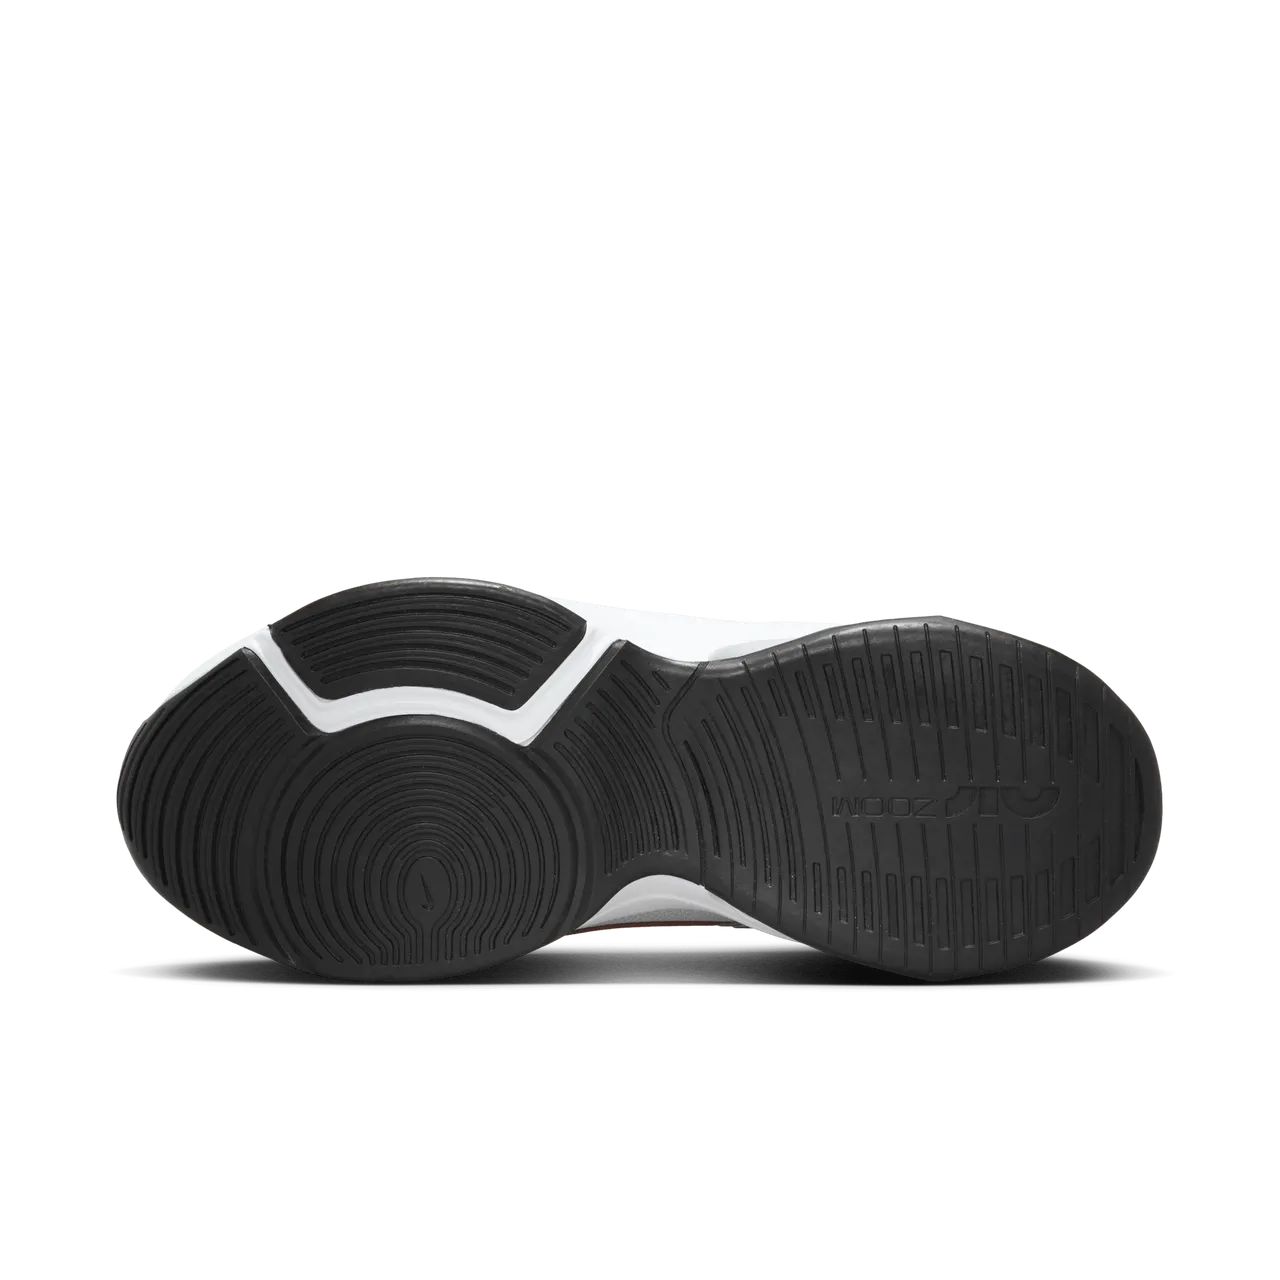 Nike Zoom Bella 6 Workout-Schuh für Damen - Grau